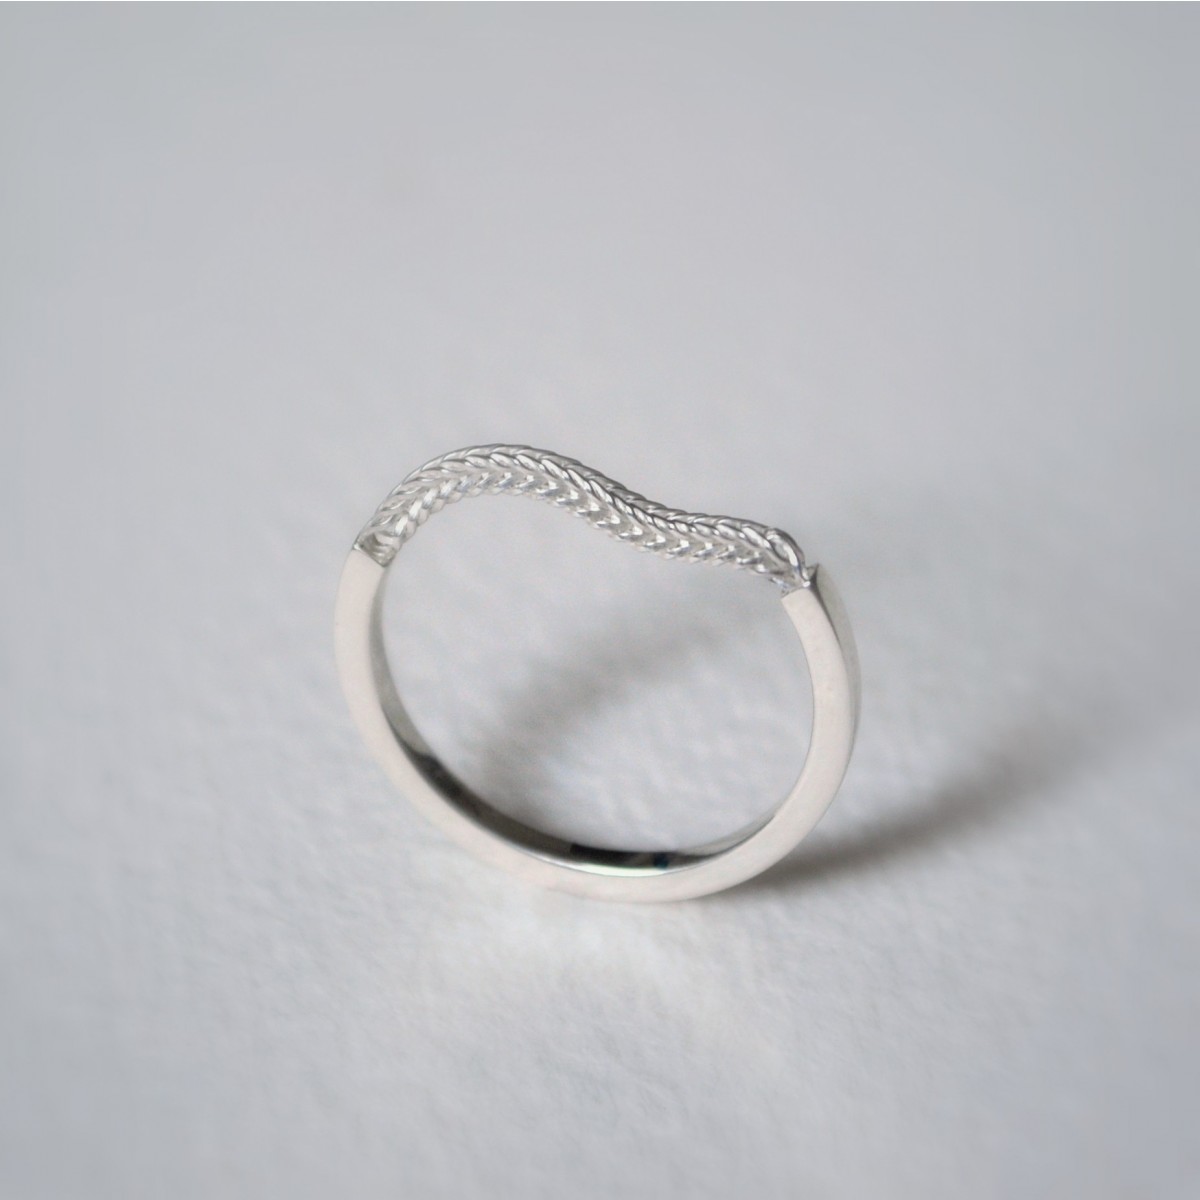 Ring "Verkettet" aus 925/- Silber von Doppelludwig